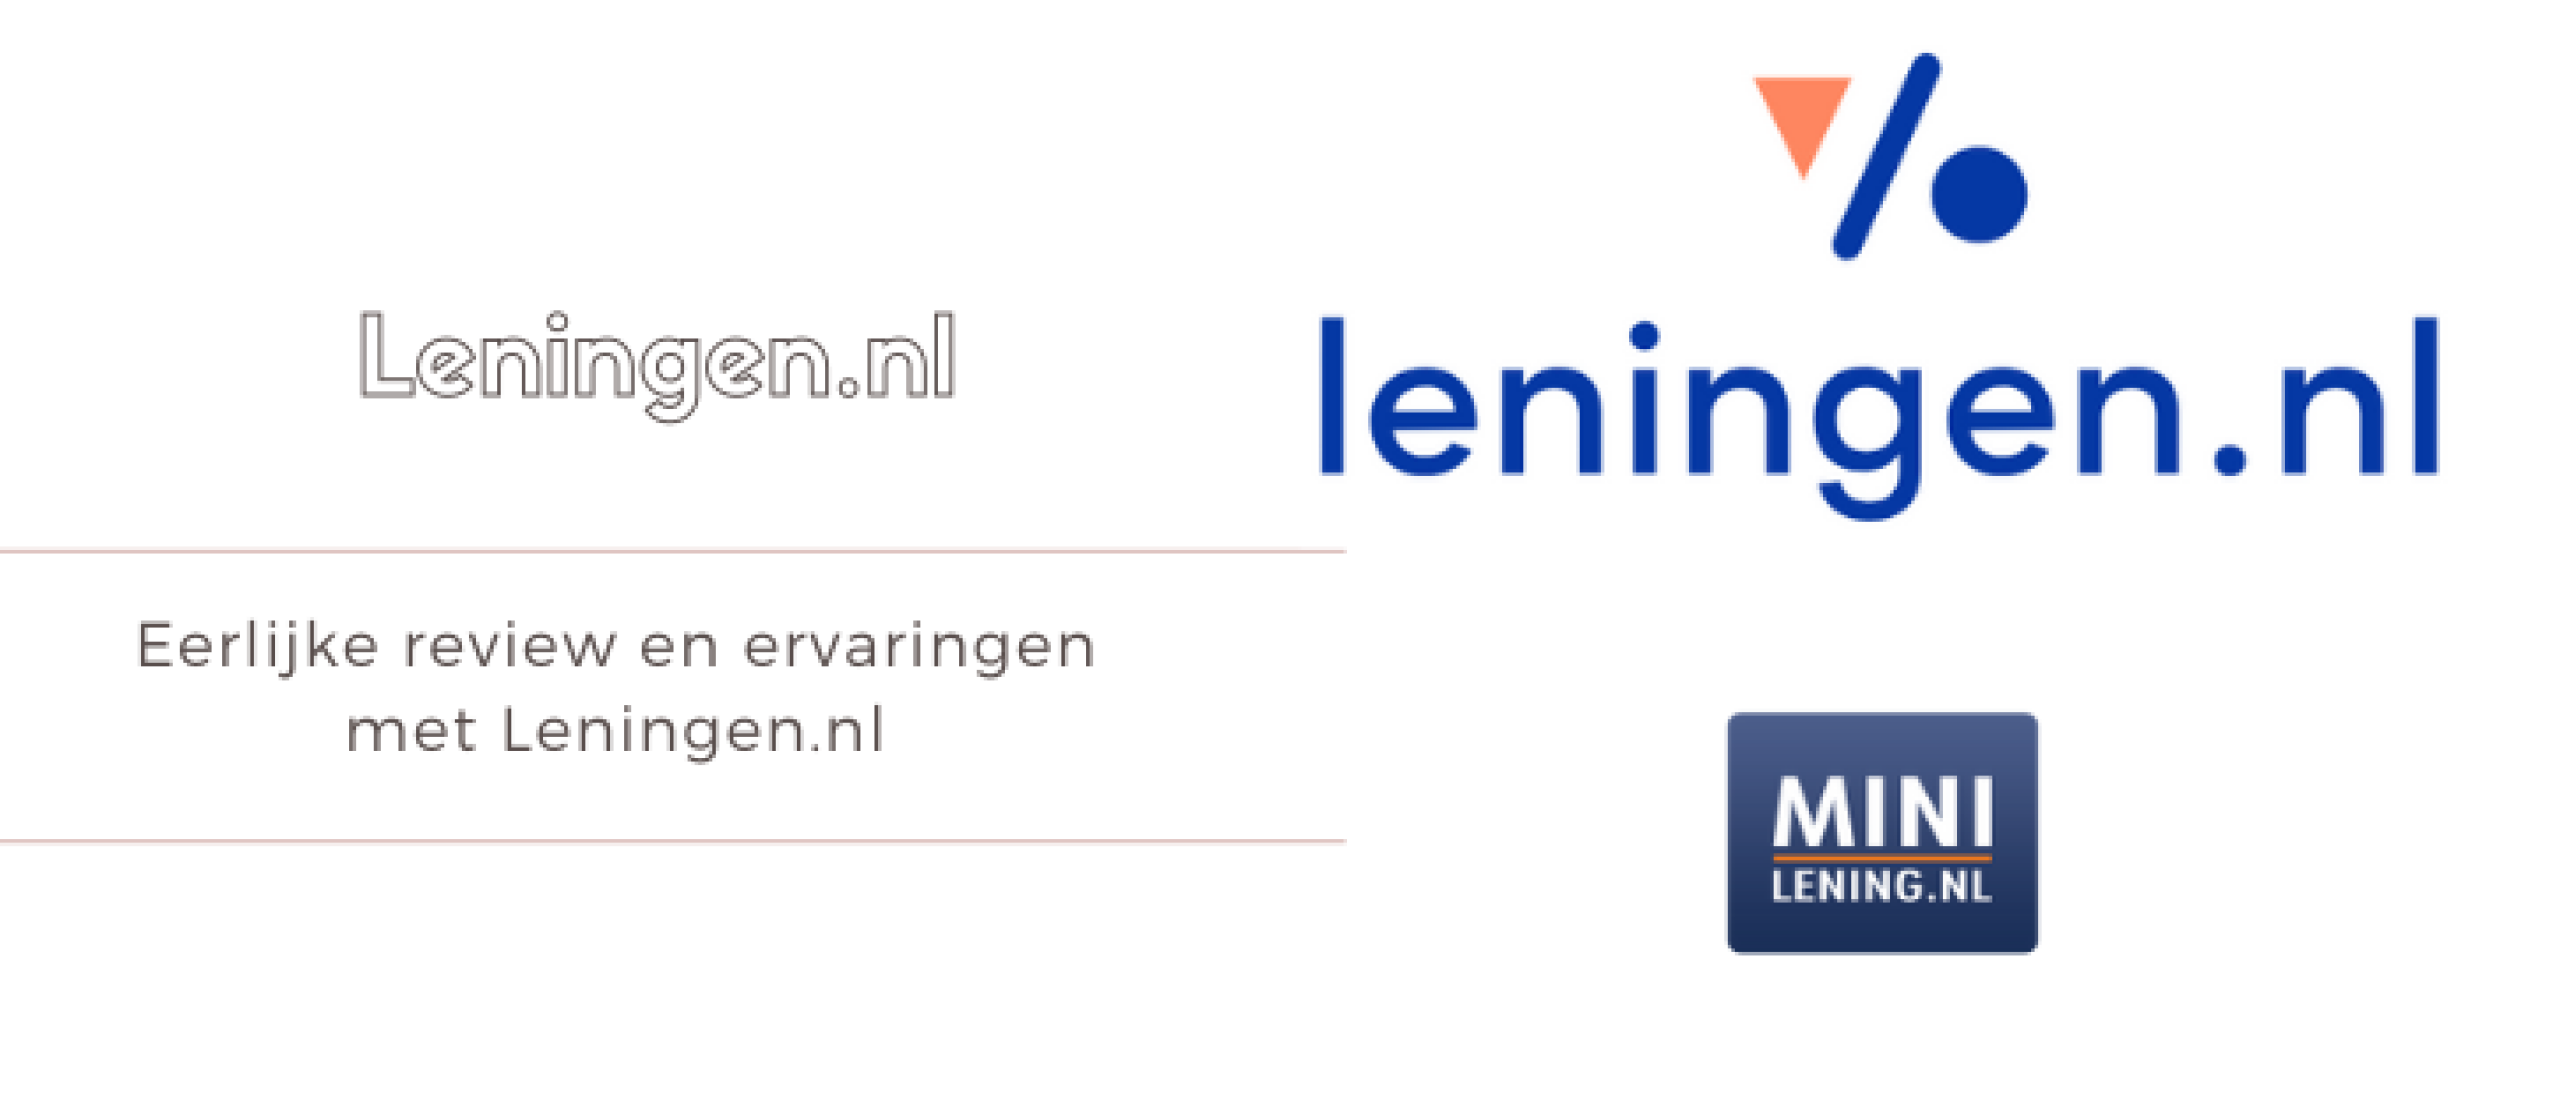 Leningen.nl Review & Ervaringen [2023] Minilening.nl